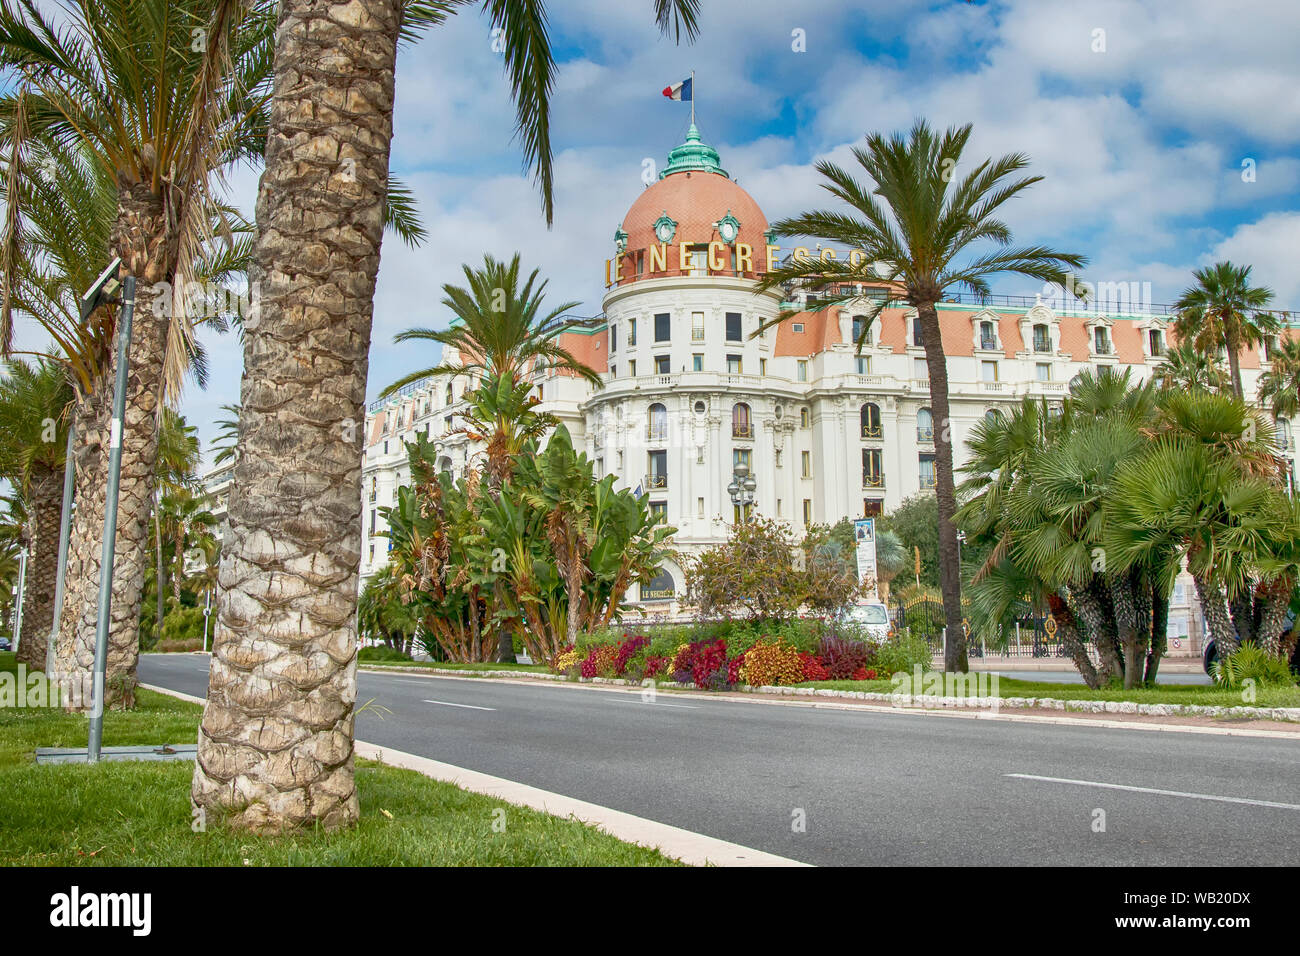 Hôtel de luxe historique célèbre le Negresco à Nice France Europe sur la promenade de l'anglais. Banque D'Images